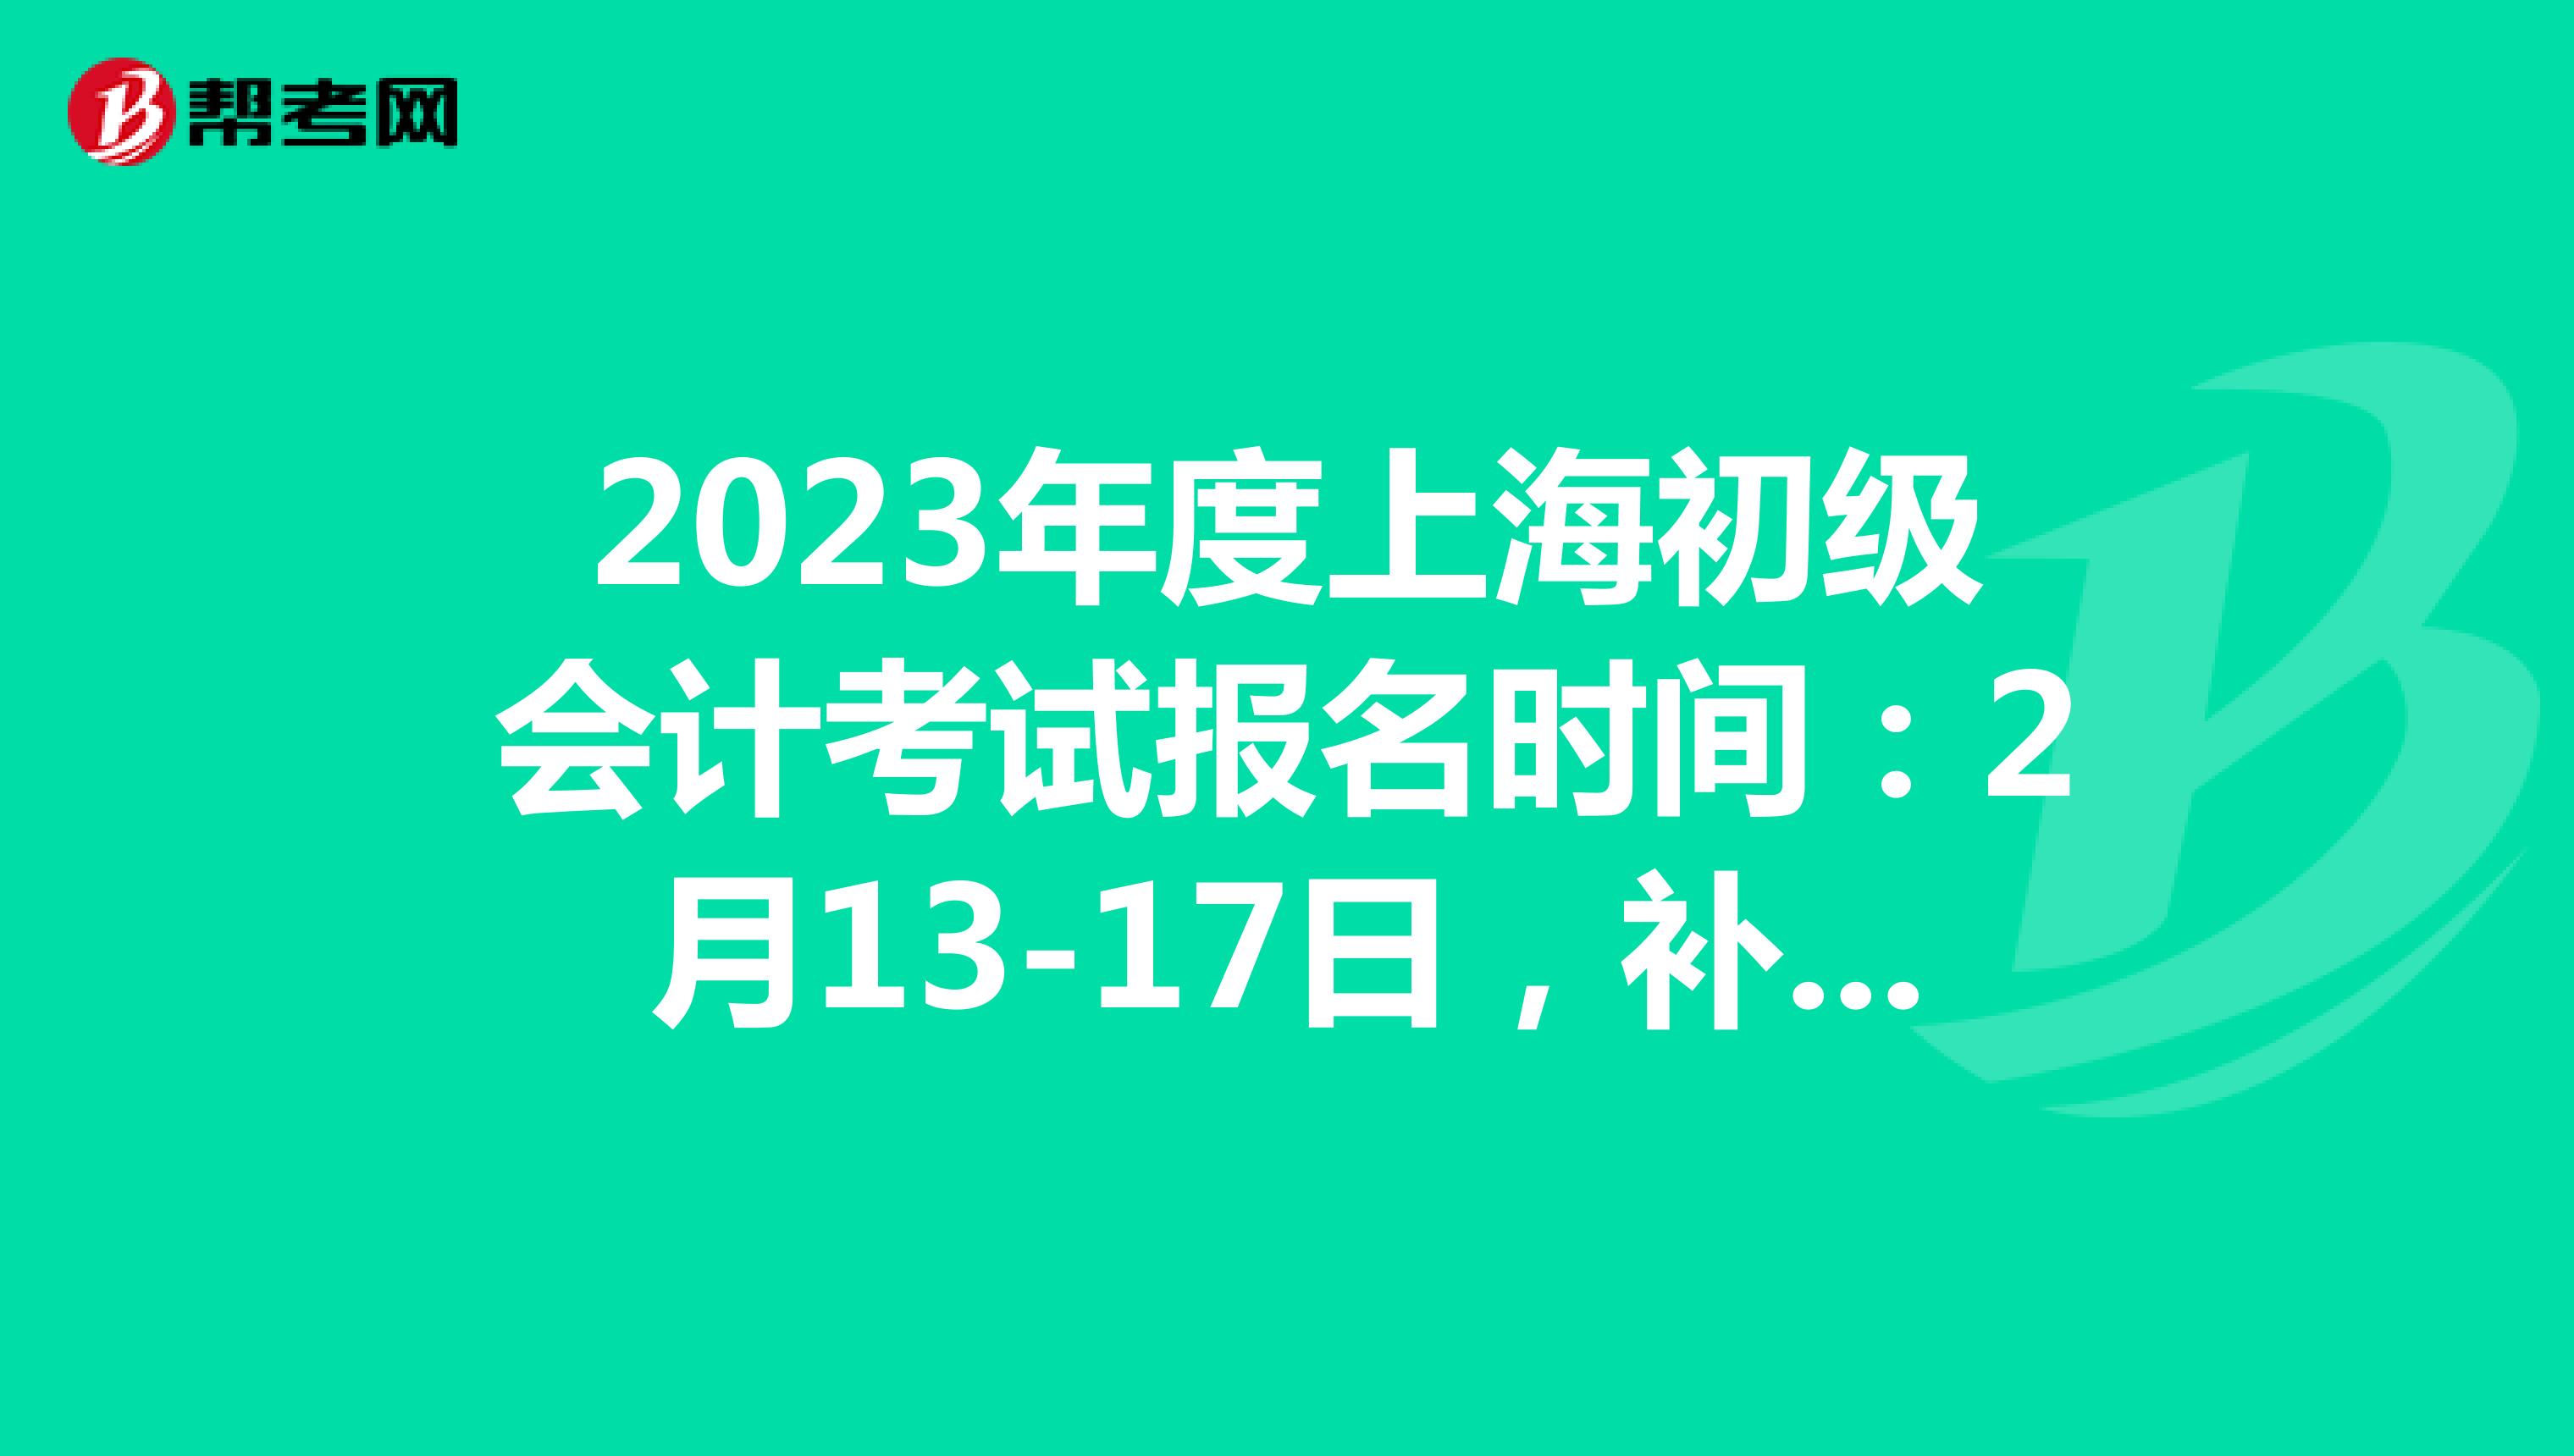  2023年度上海初级会计考试报名时间：2月13-17日，补报名：2月24-28日